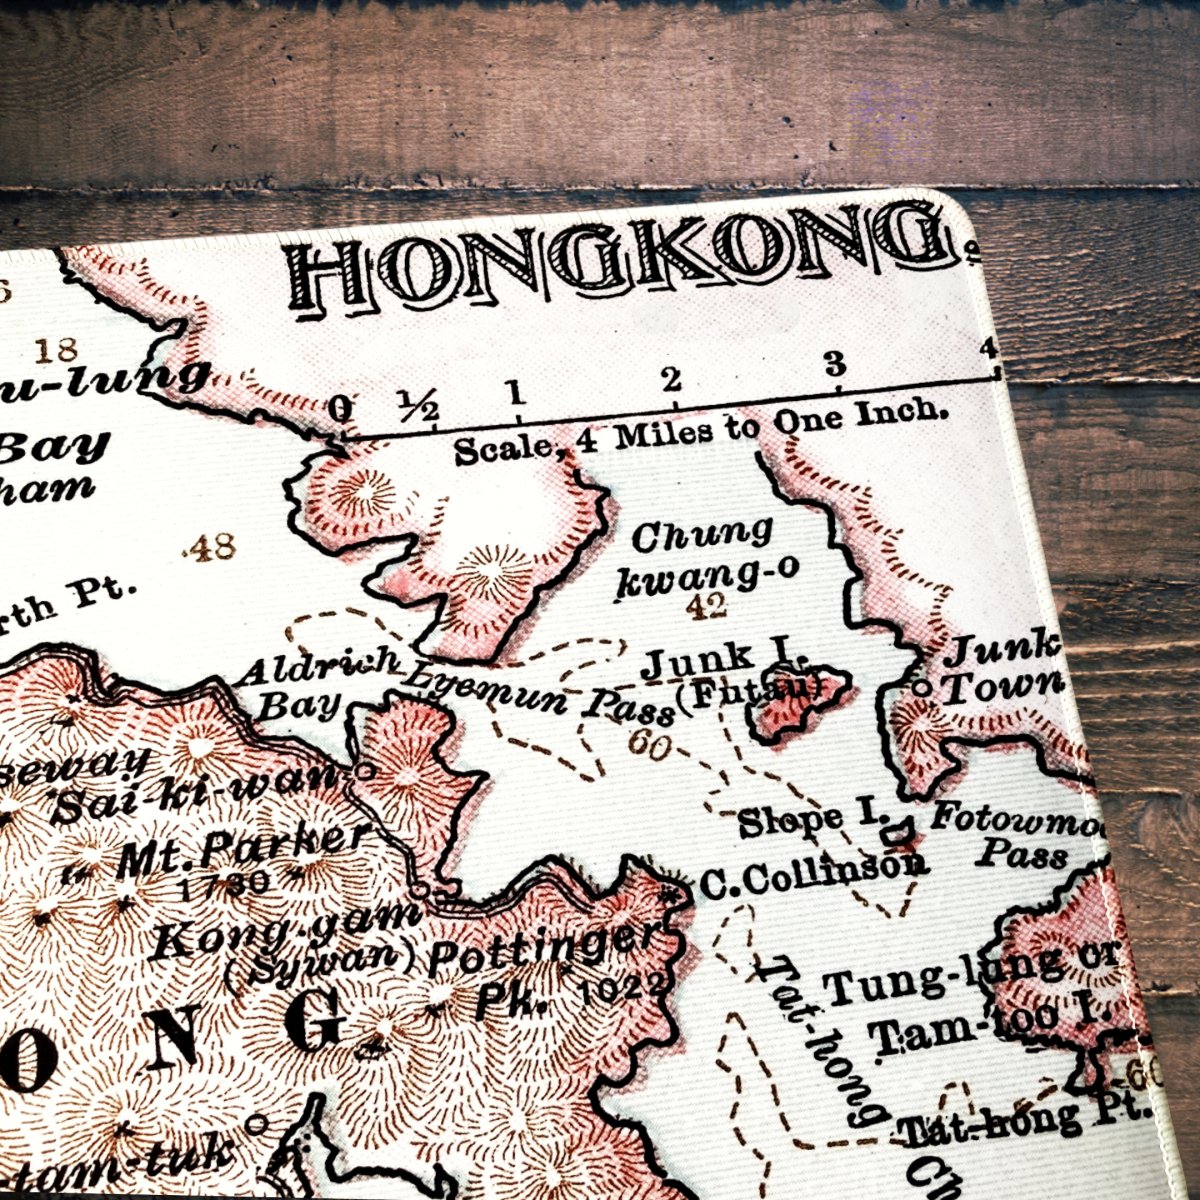 重製版1900年香港地圖款滑鼠墊 - Hong Kong Maper